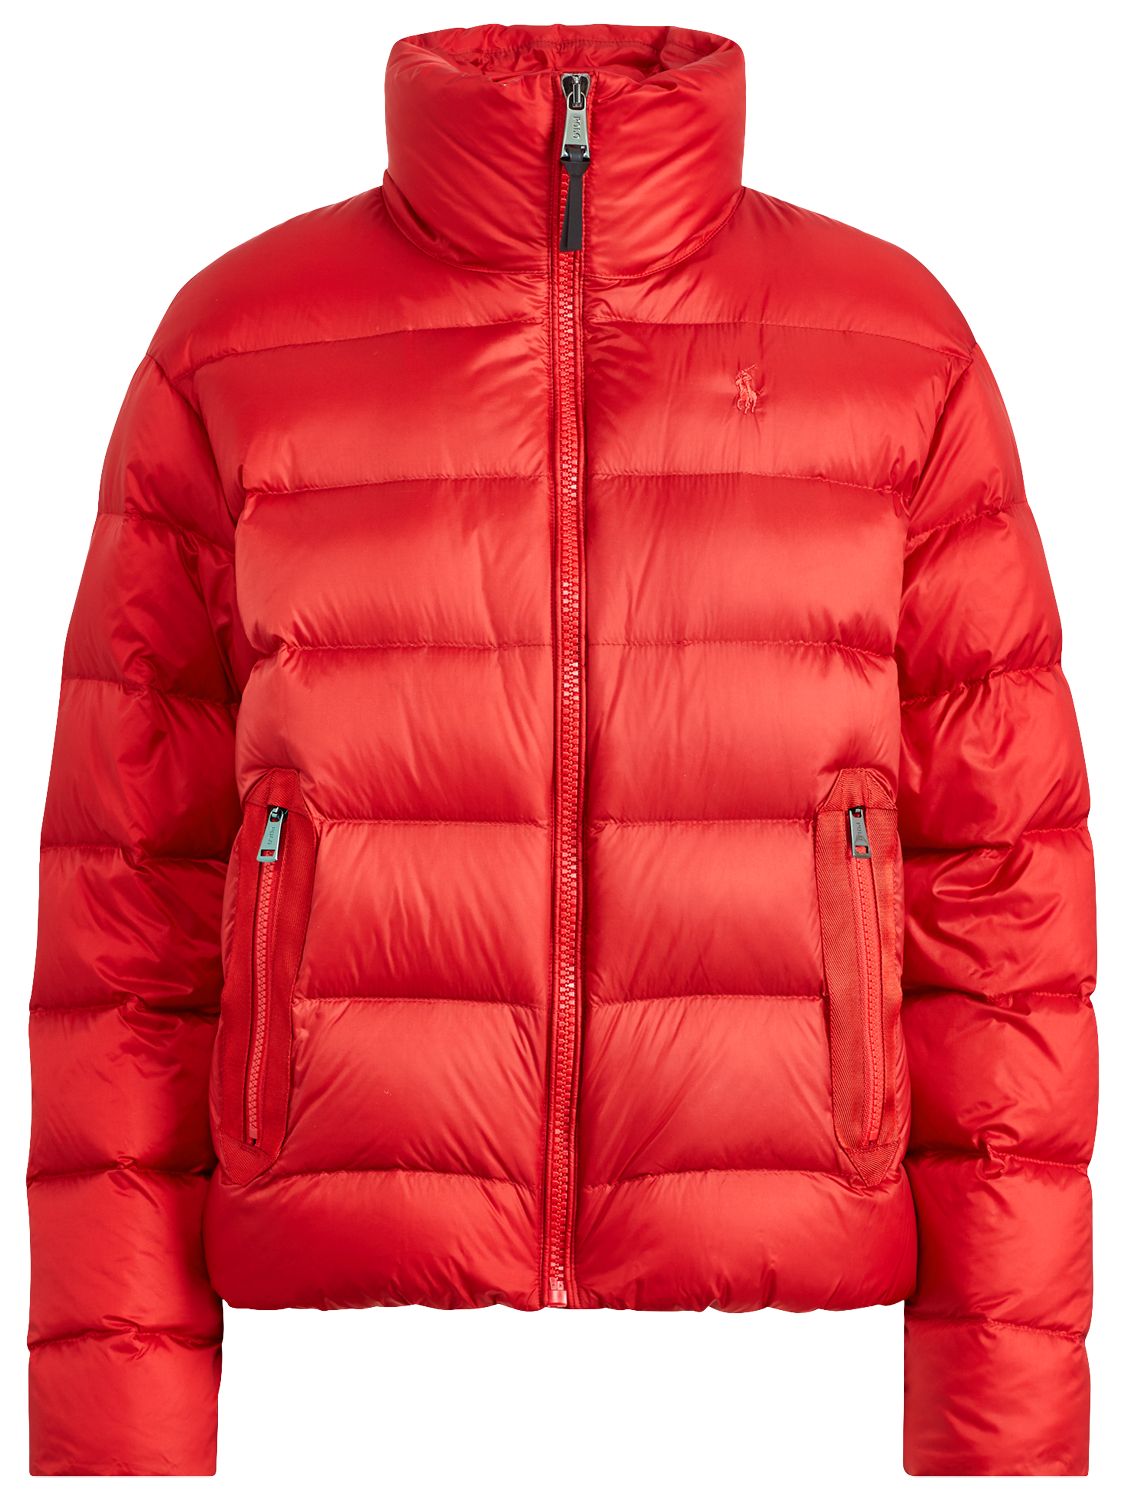 red ralph lauren jacket